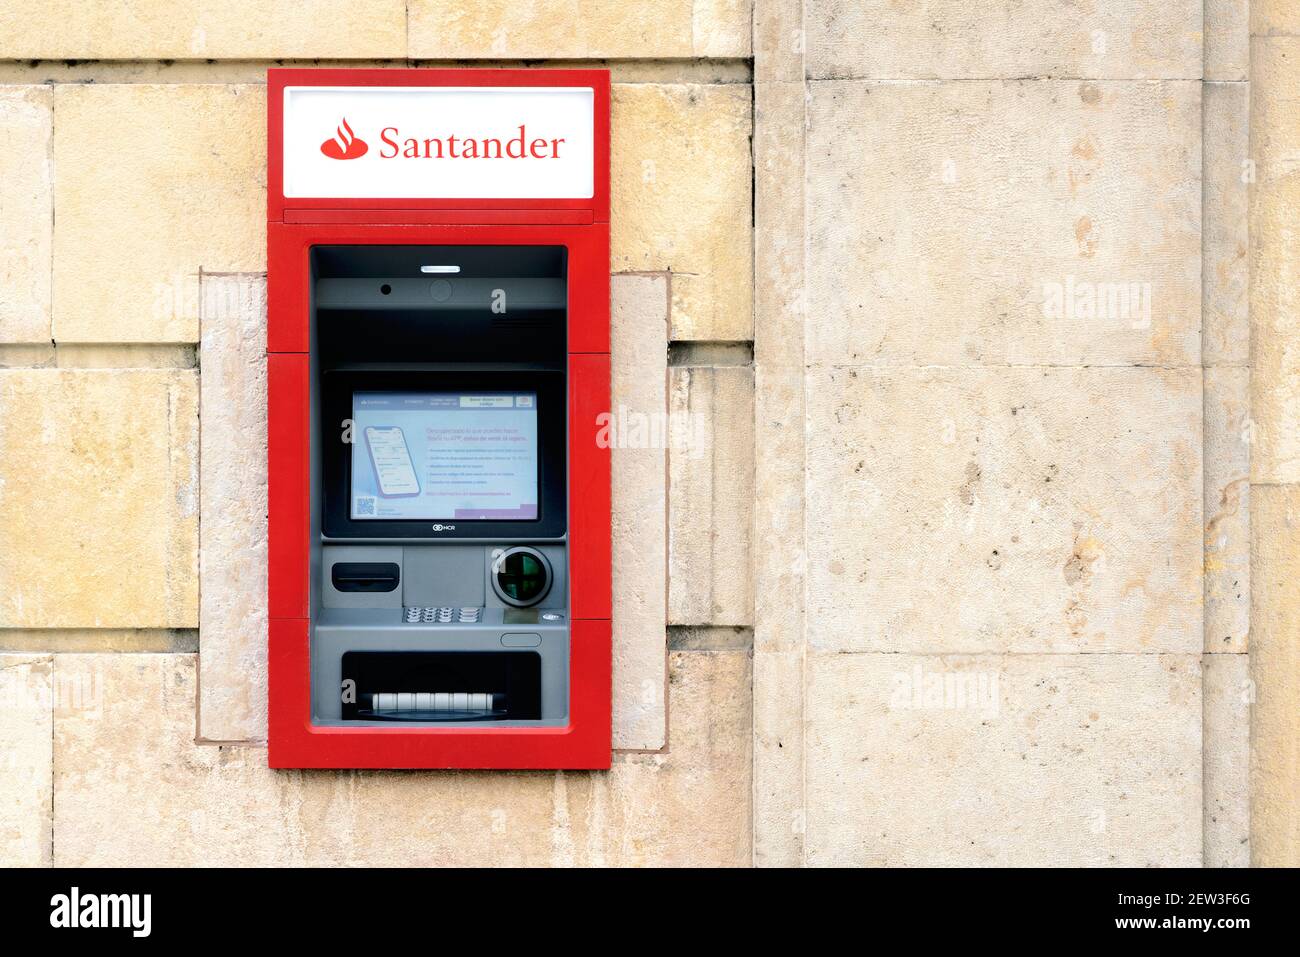 ATM macchina di Banca Santander nella città.dettaglio di Santander ufficio banca.Vista esterna della filiale della banca di Santander Foto Stock